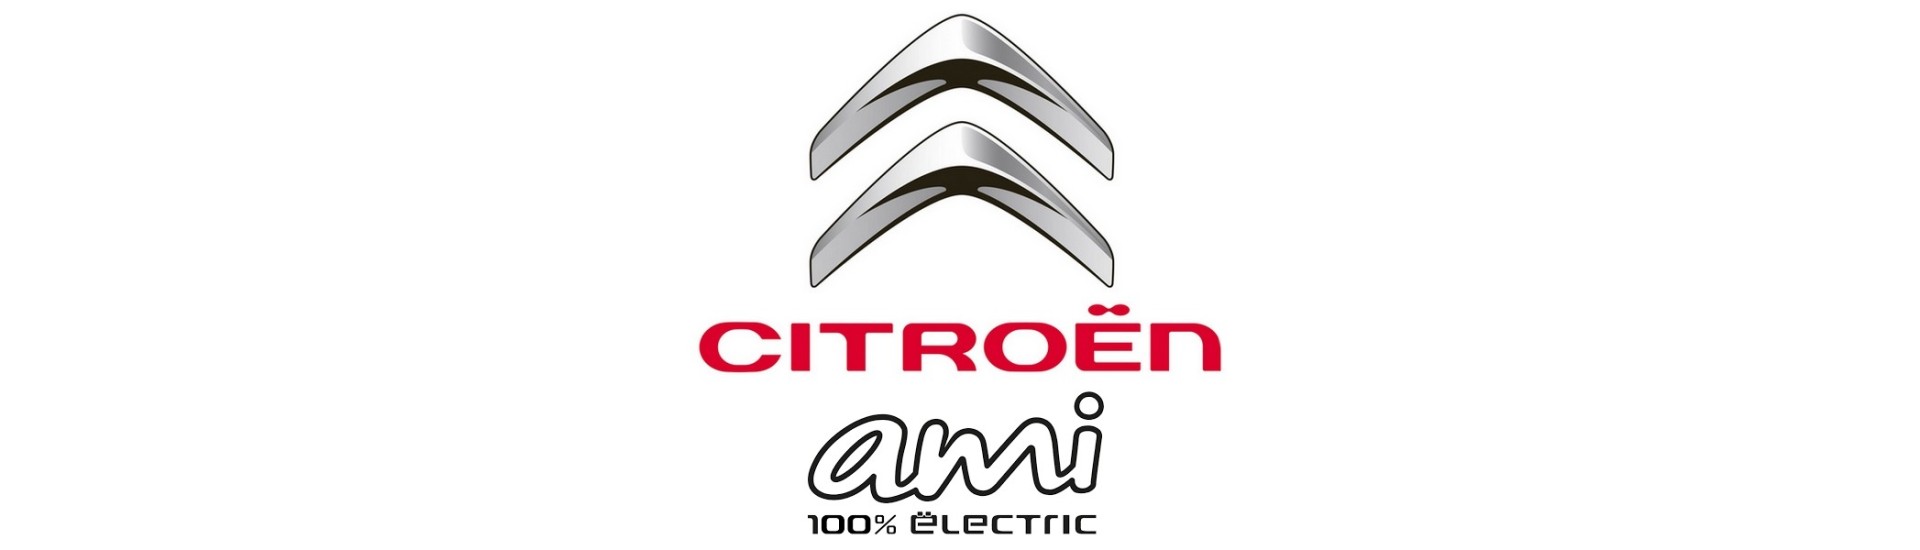 Cea mai buna masina fara permis Citroën